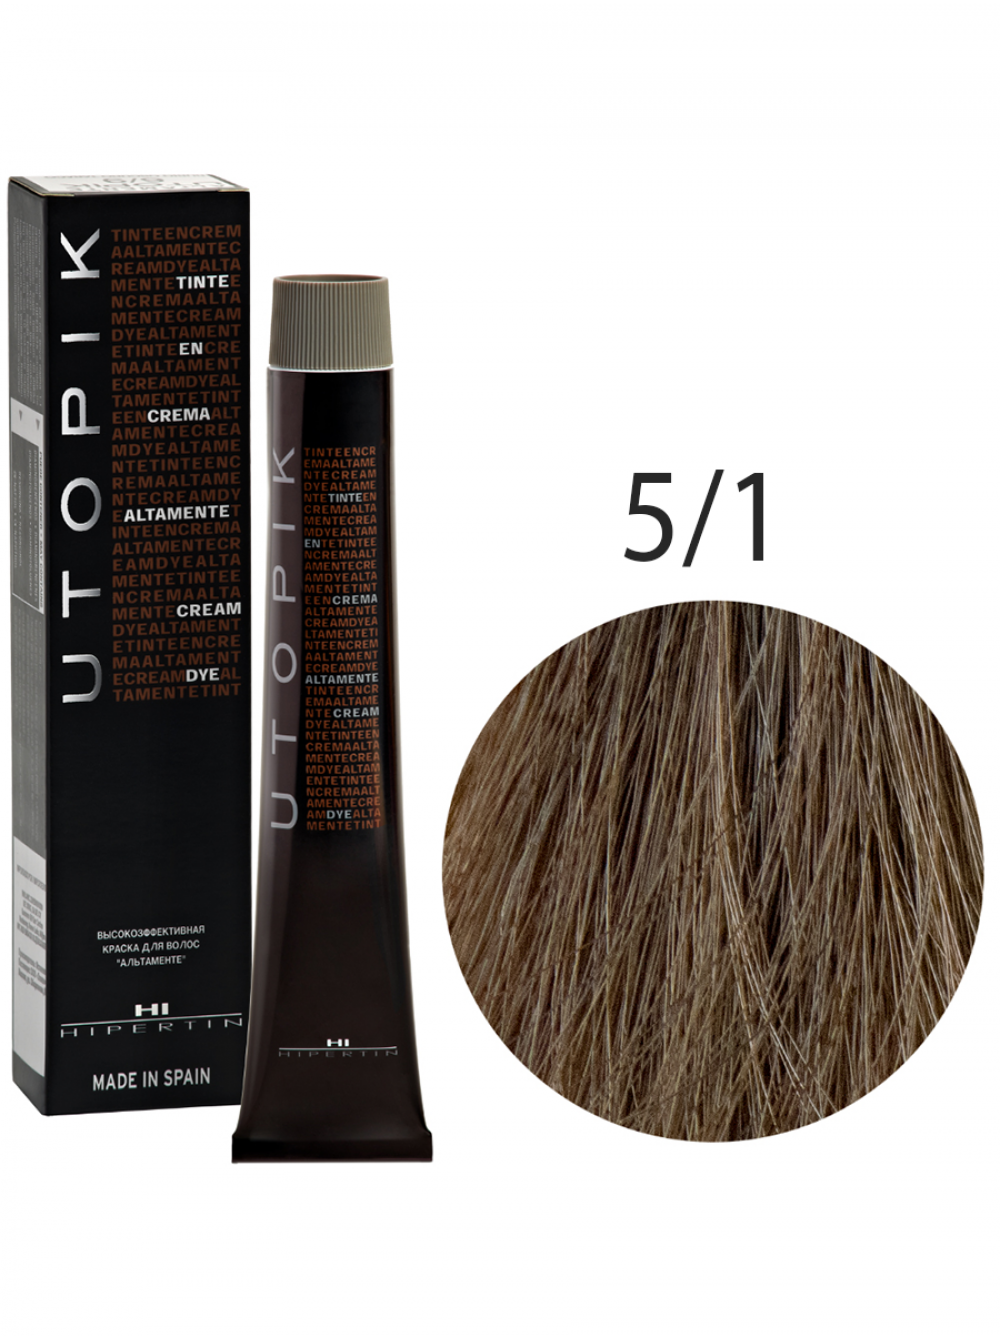 Краска для волос Utopik Altamente 5/1U, светлый шатен пепельный, 60 мл